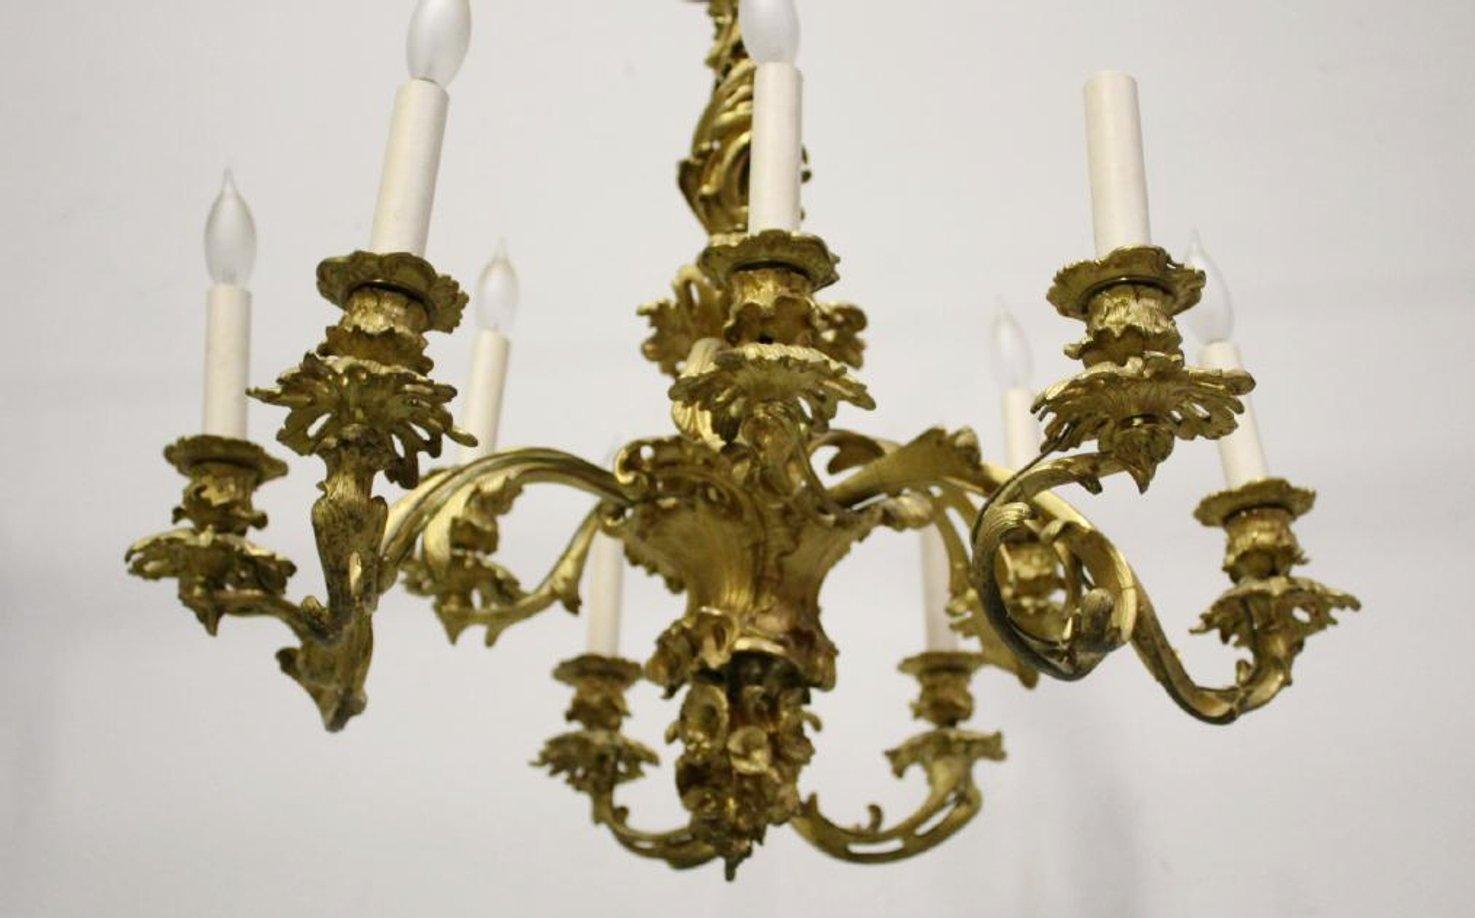 Aufwändige 19cnetury Signed JD Louis XV Stil Ormolu 9 Licht Kronleuchter, sorgfältige Aufmerksamkeit wurde auf jedes Detail gegeben.
inklusive Kette und Vordach